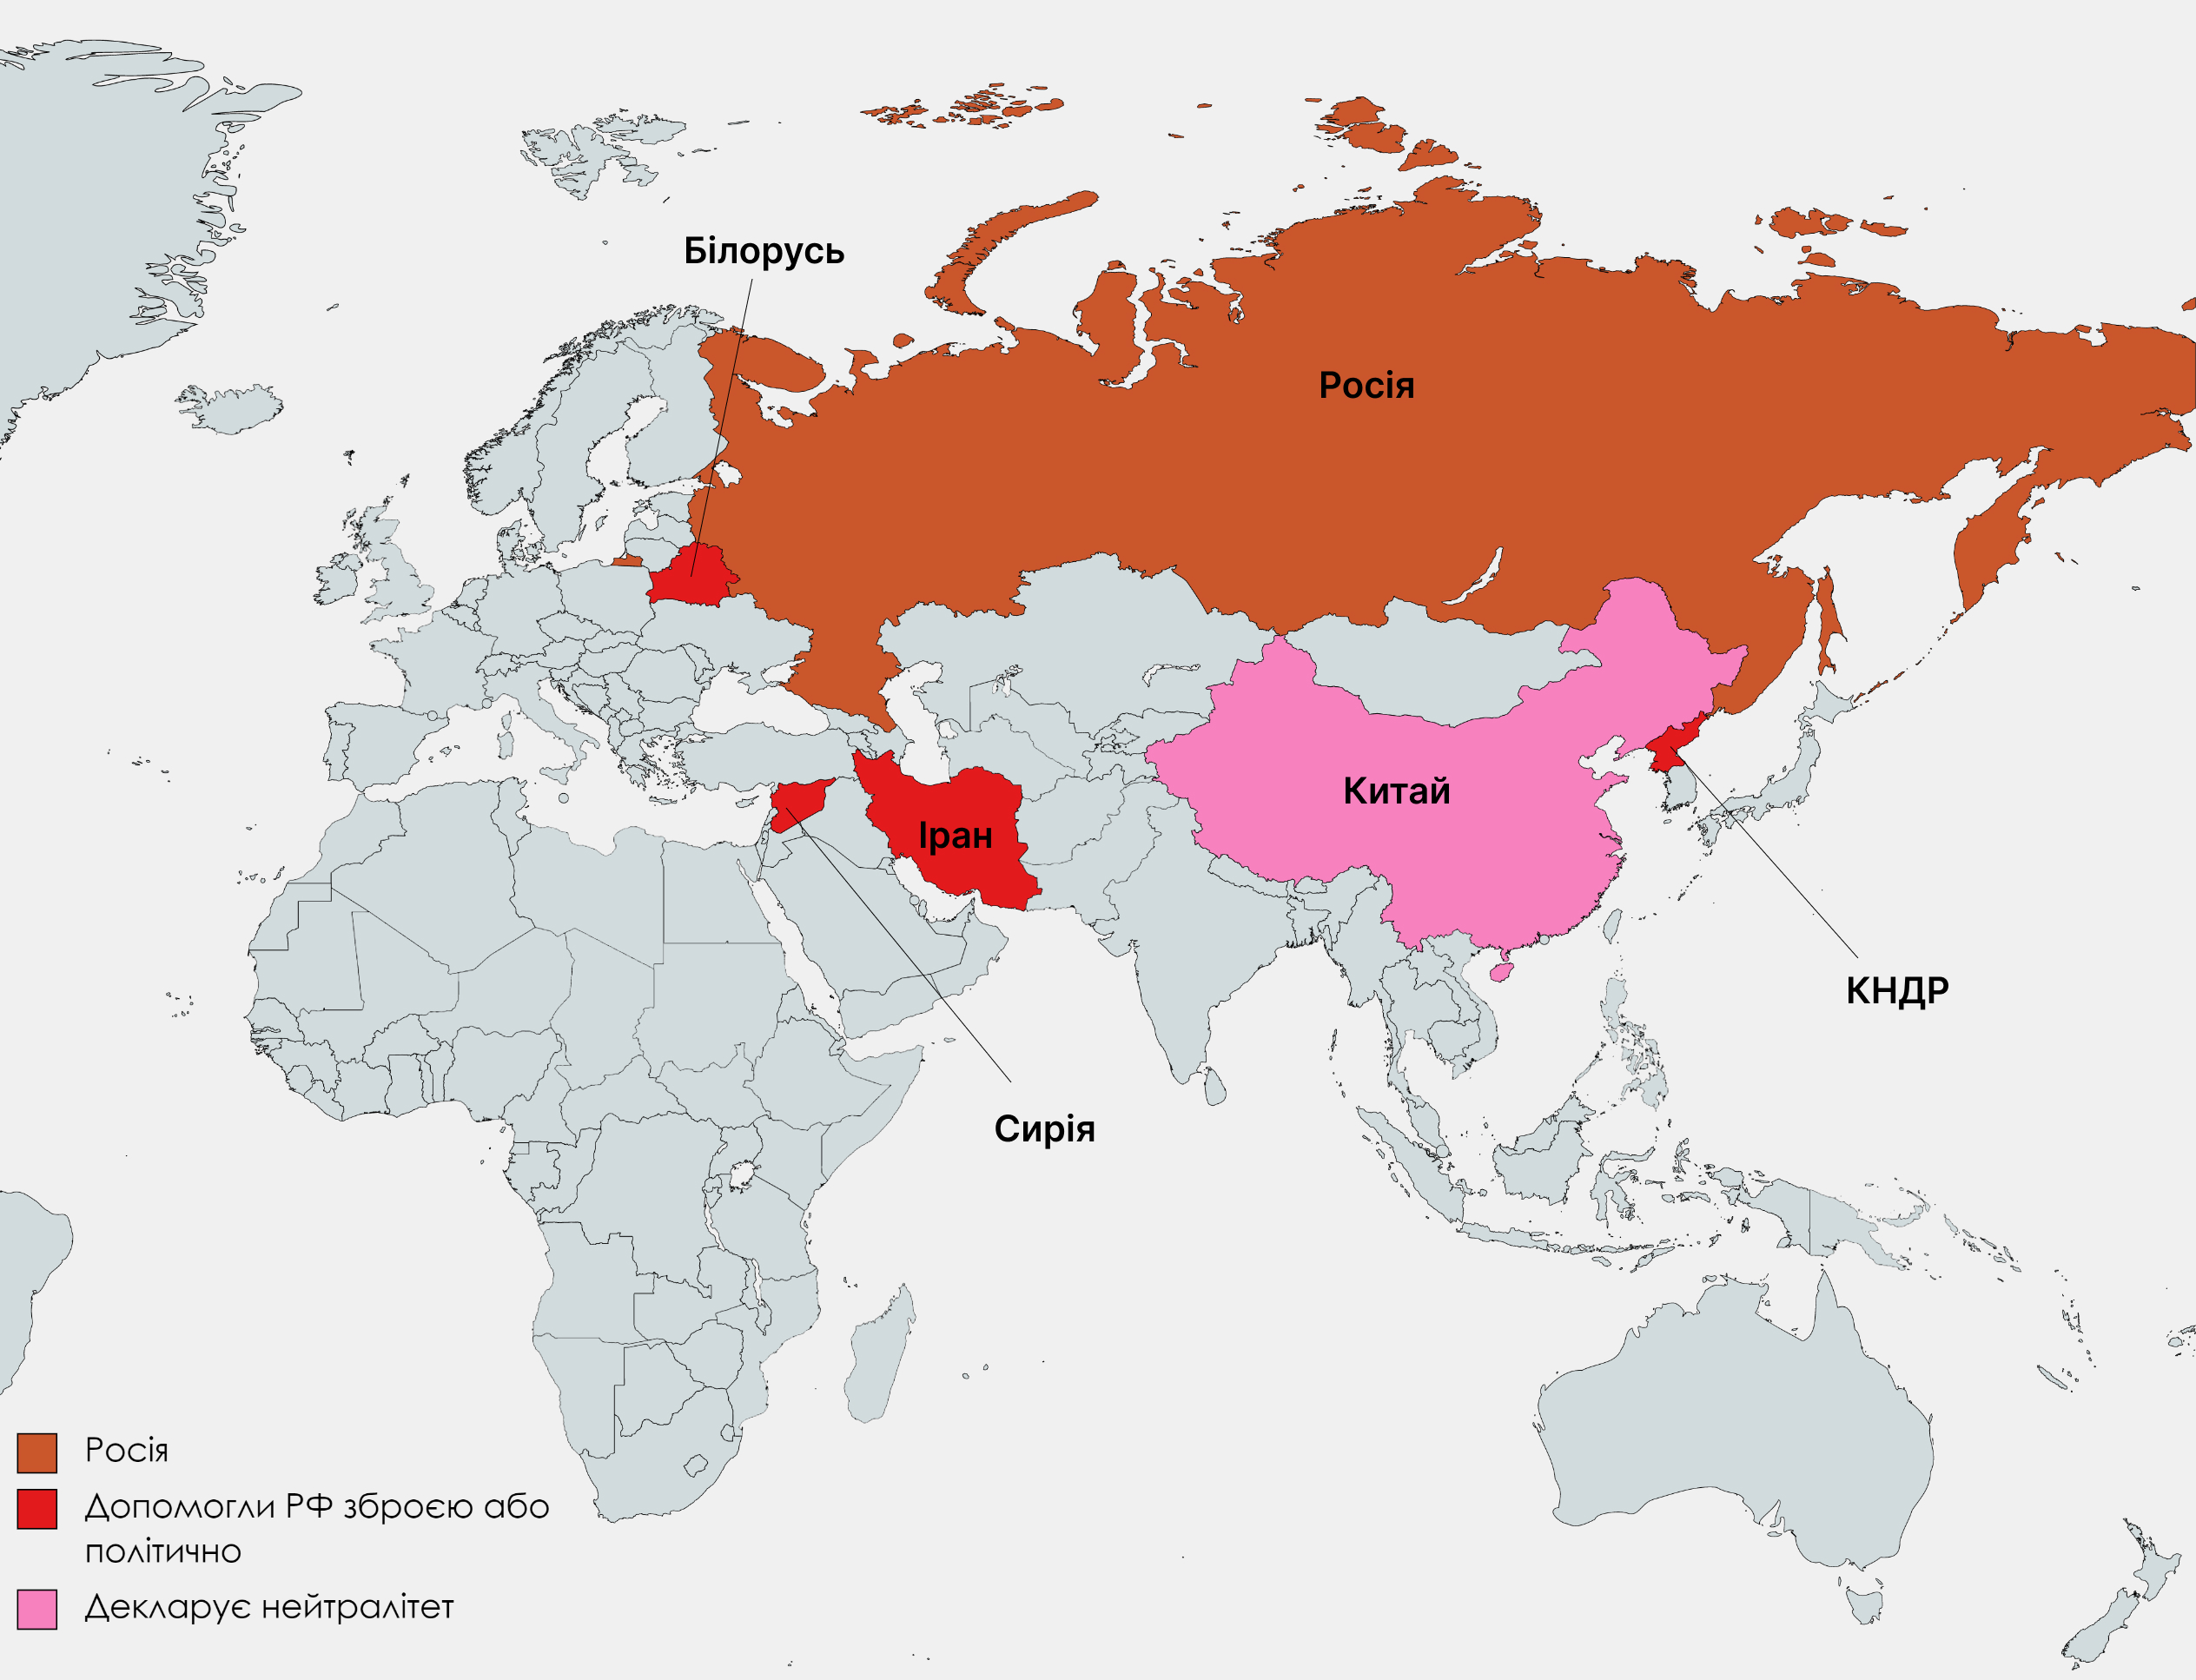 Иран, Сирия, КНДР, Китай, Россия. Угрожает ли миру новая "ось зла"